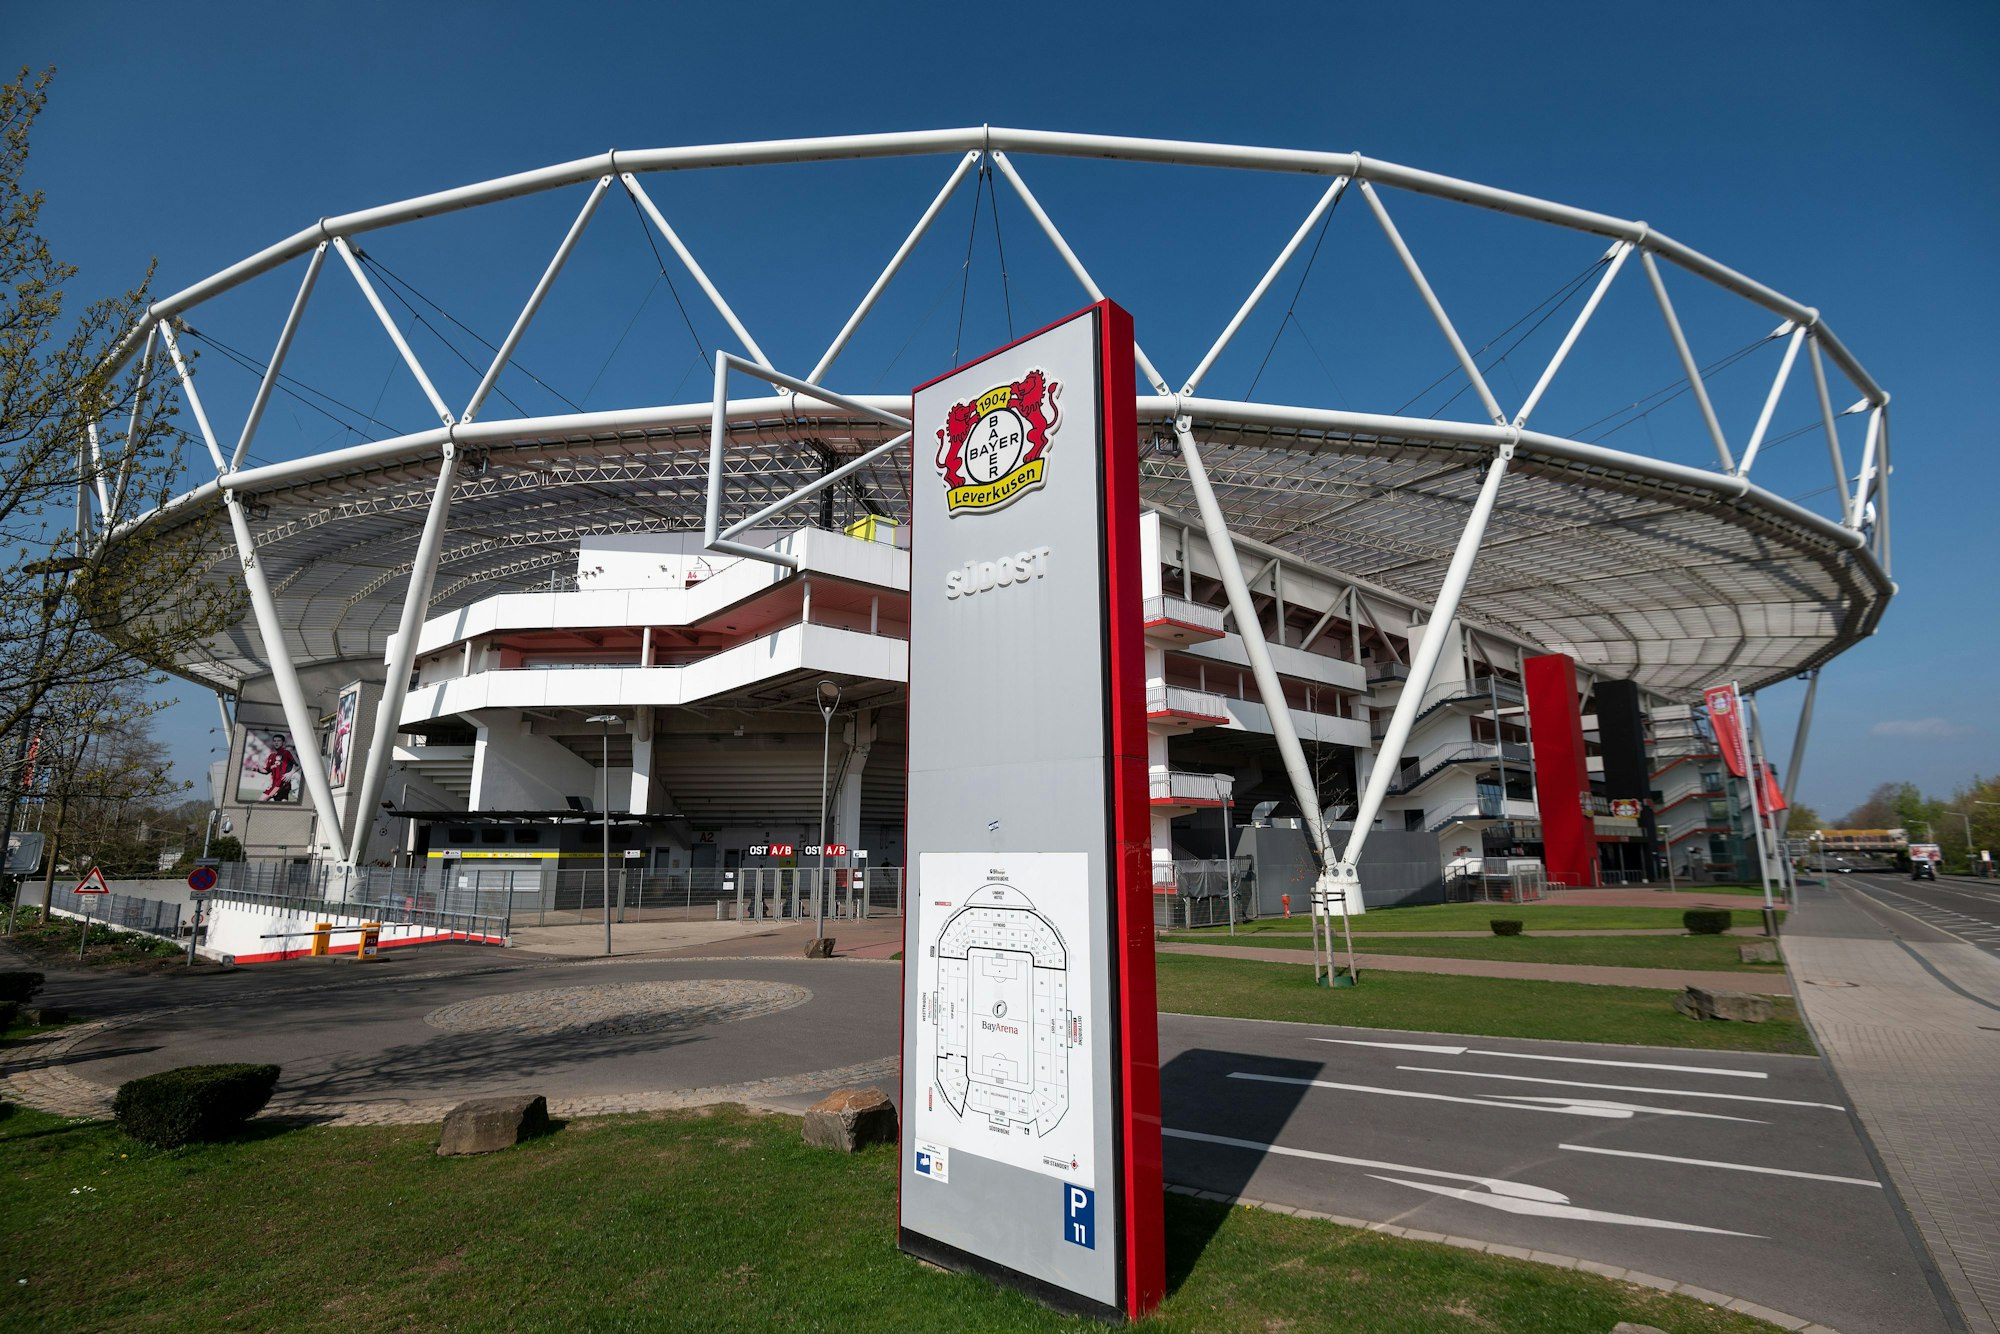 Die BayArena, das Stadion des Fußball-Bundesligisten Bayer 04 Leverkusen.